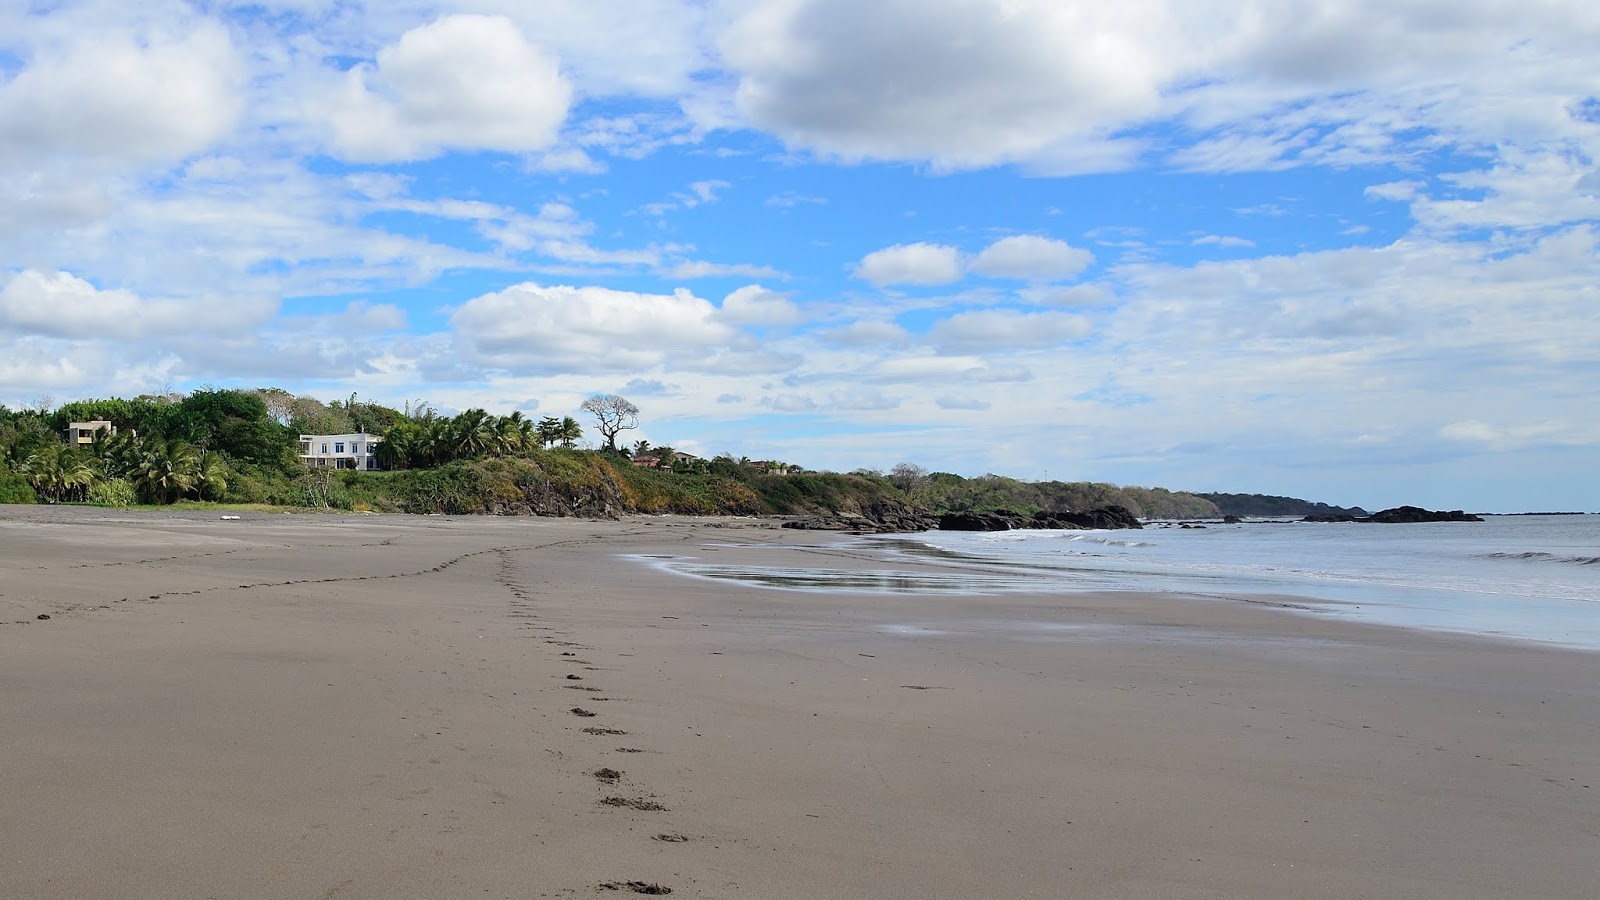 Foto av Playa Azul med grå sand och stenar yta